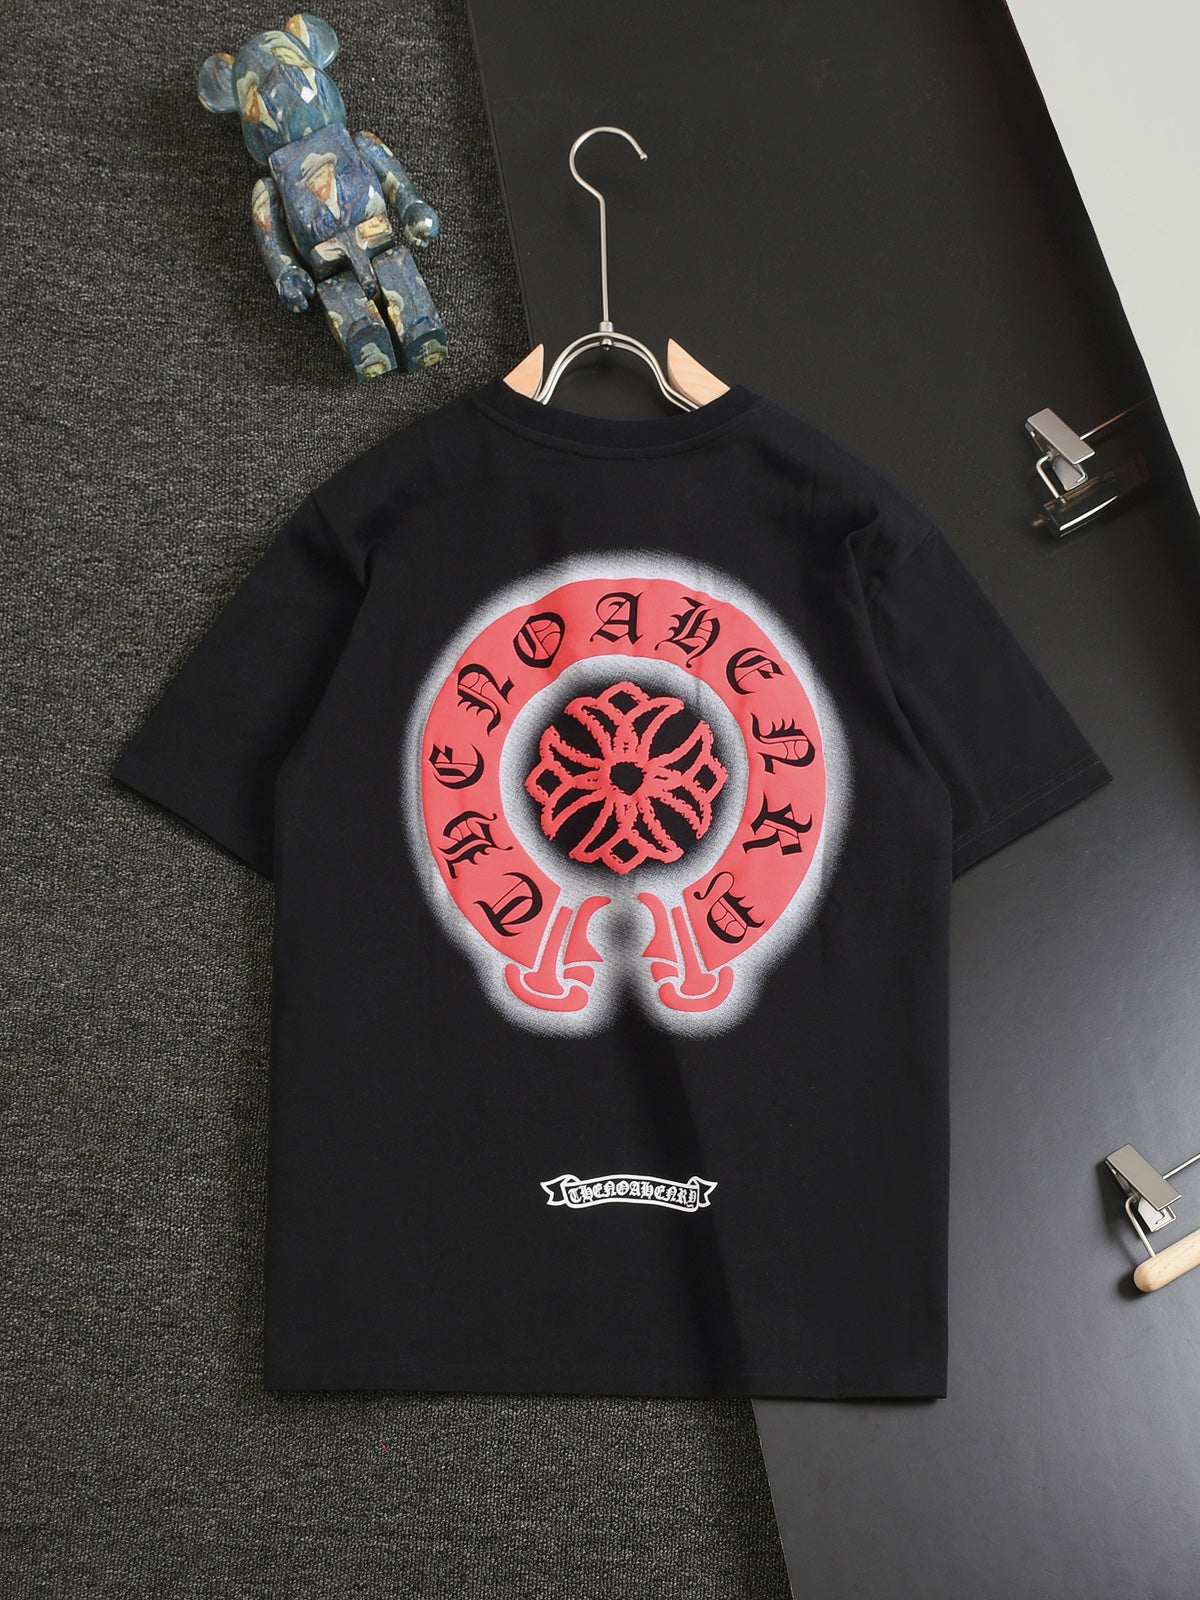 CS-Trendy fashion T-shirt